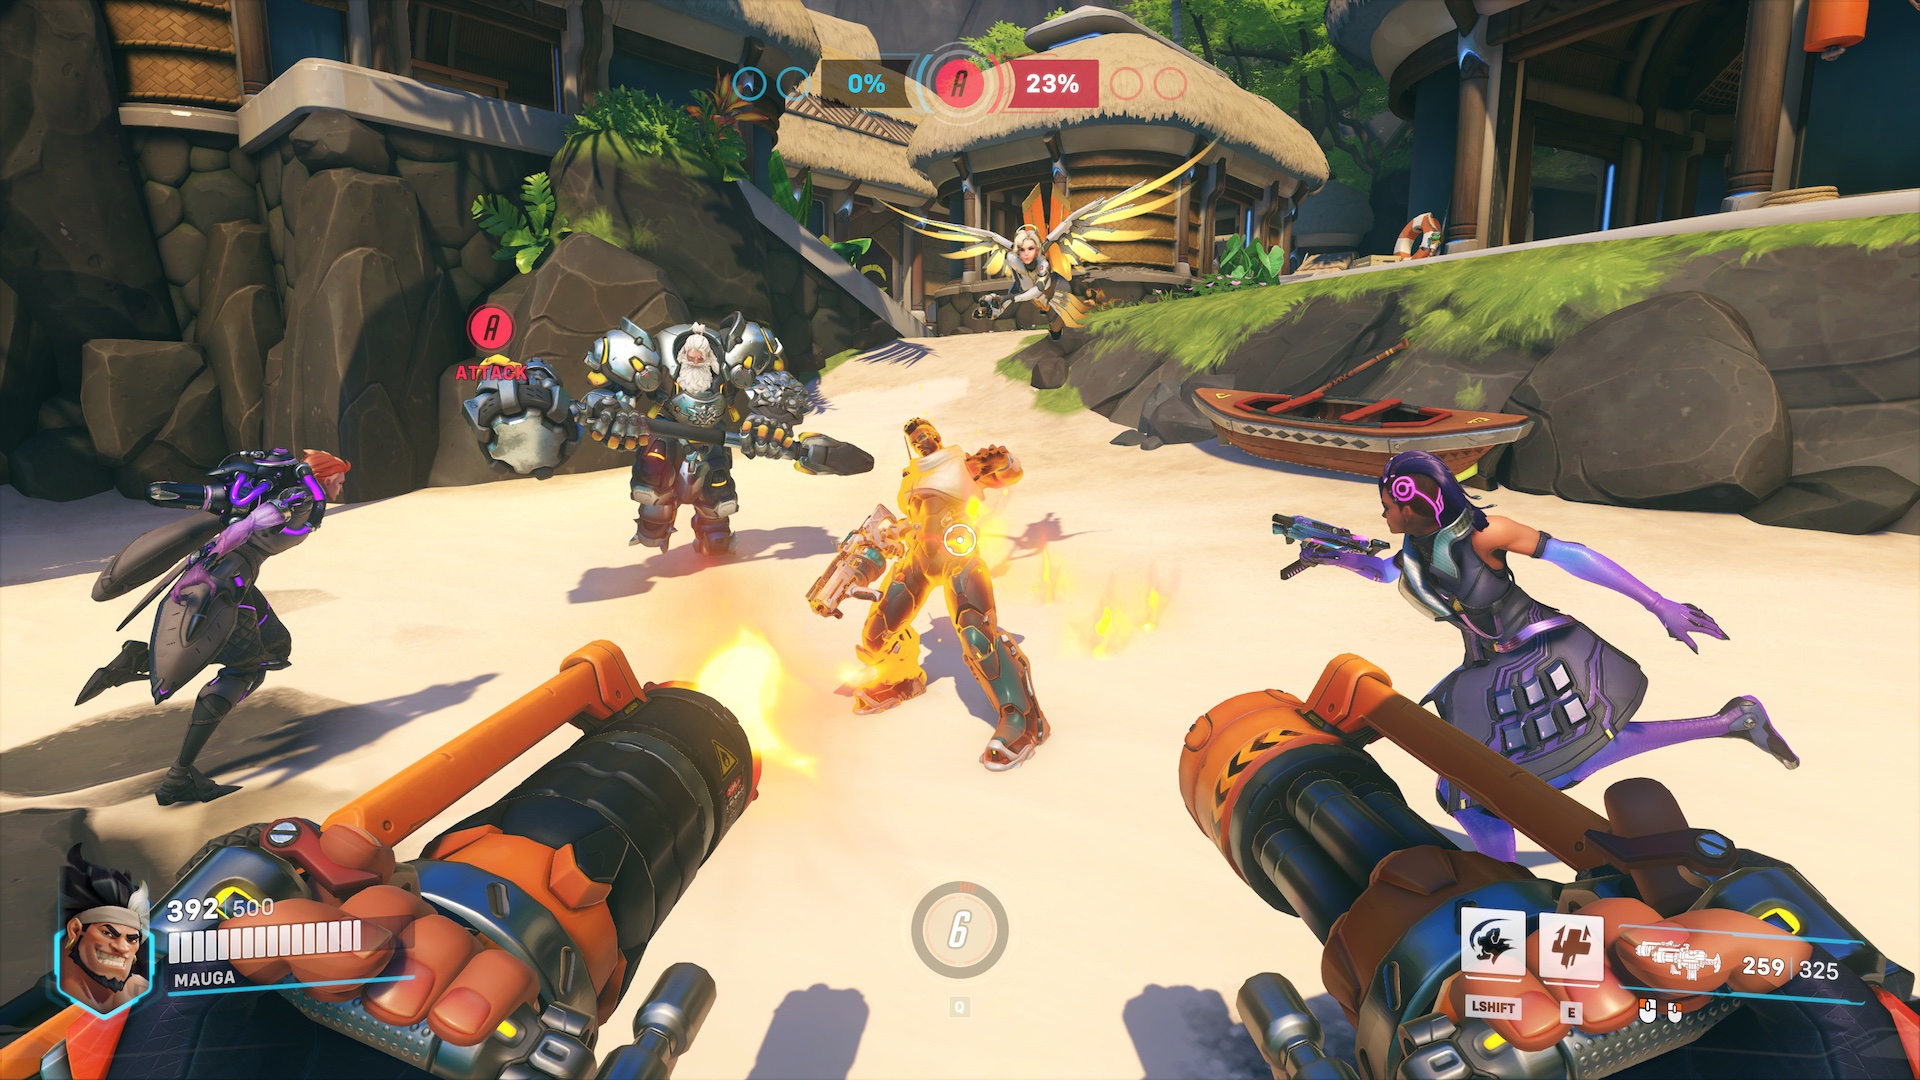 Captura de pantalla de Overwatch 2 mostrando al héroe Mauga en combate